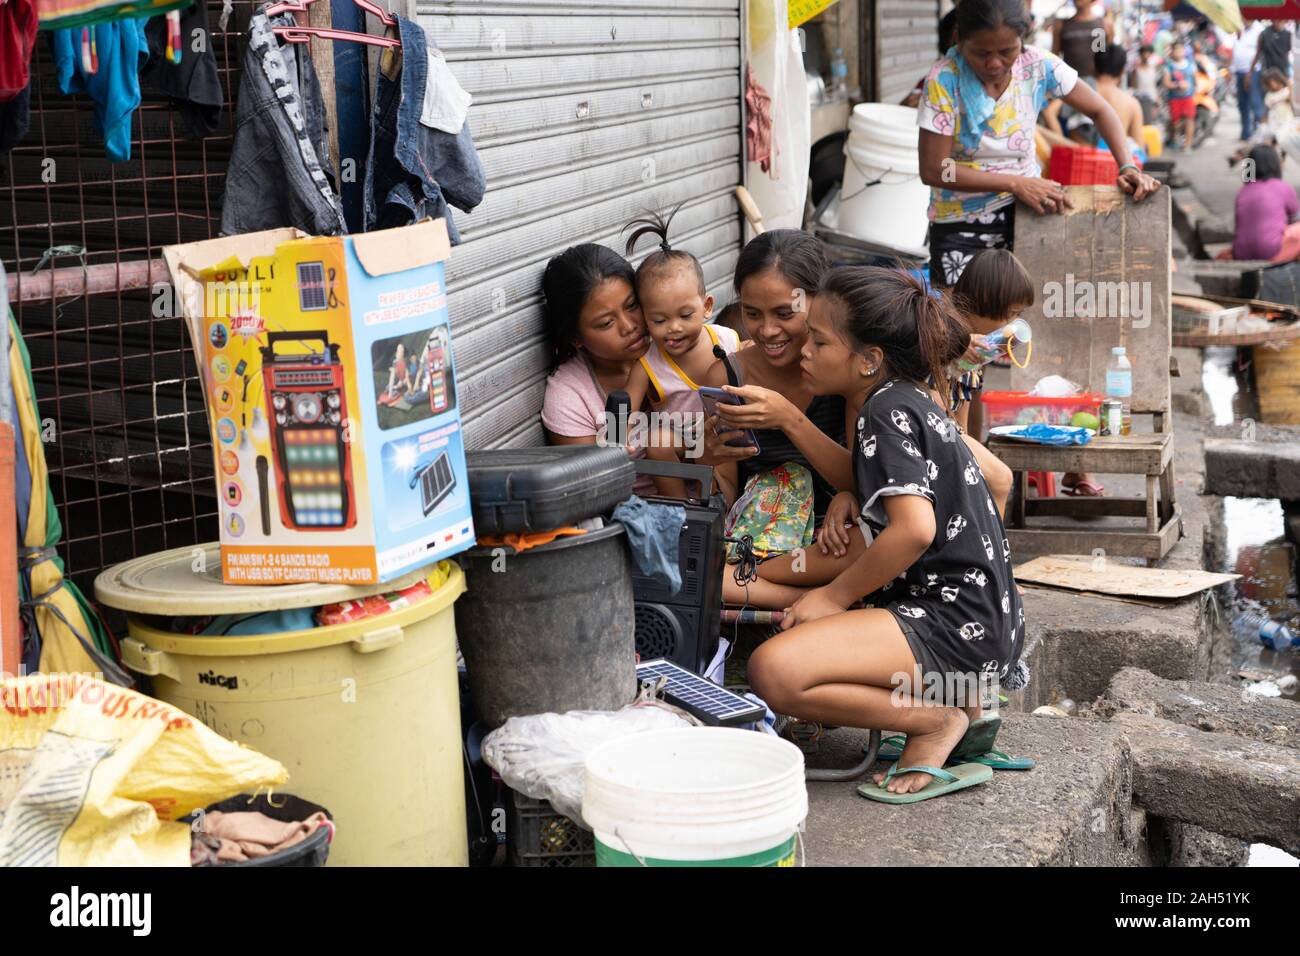 Le ragazze la scelta di brani su un telefono cellulare collegato ad un karaoke entro una zona povera di Cebu City, Filippine Foto Stock